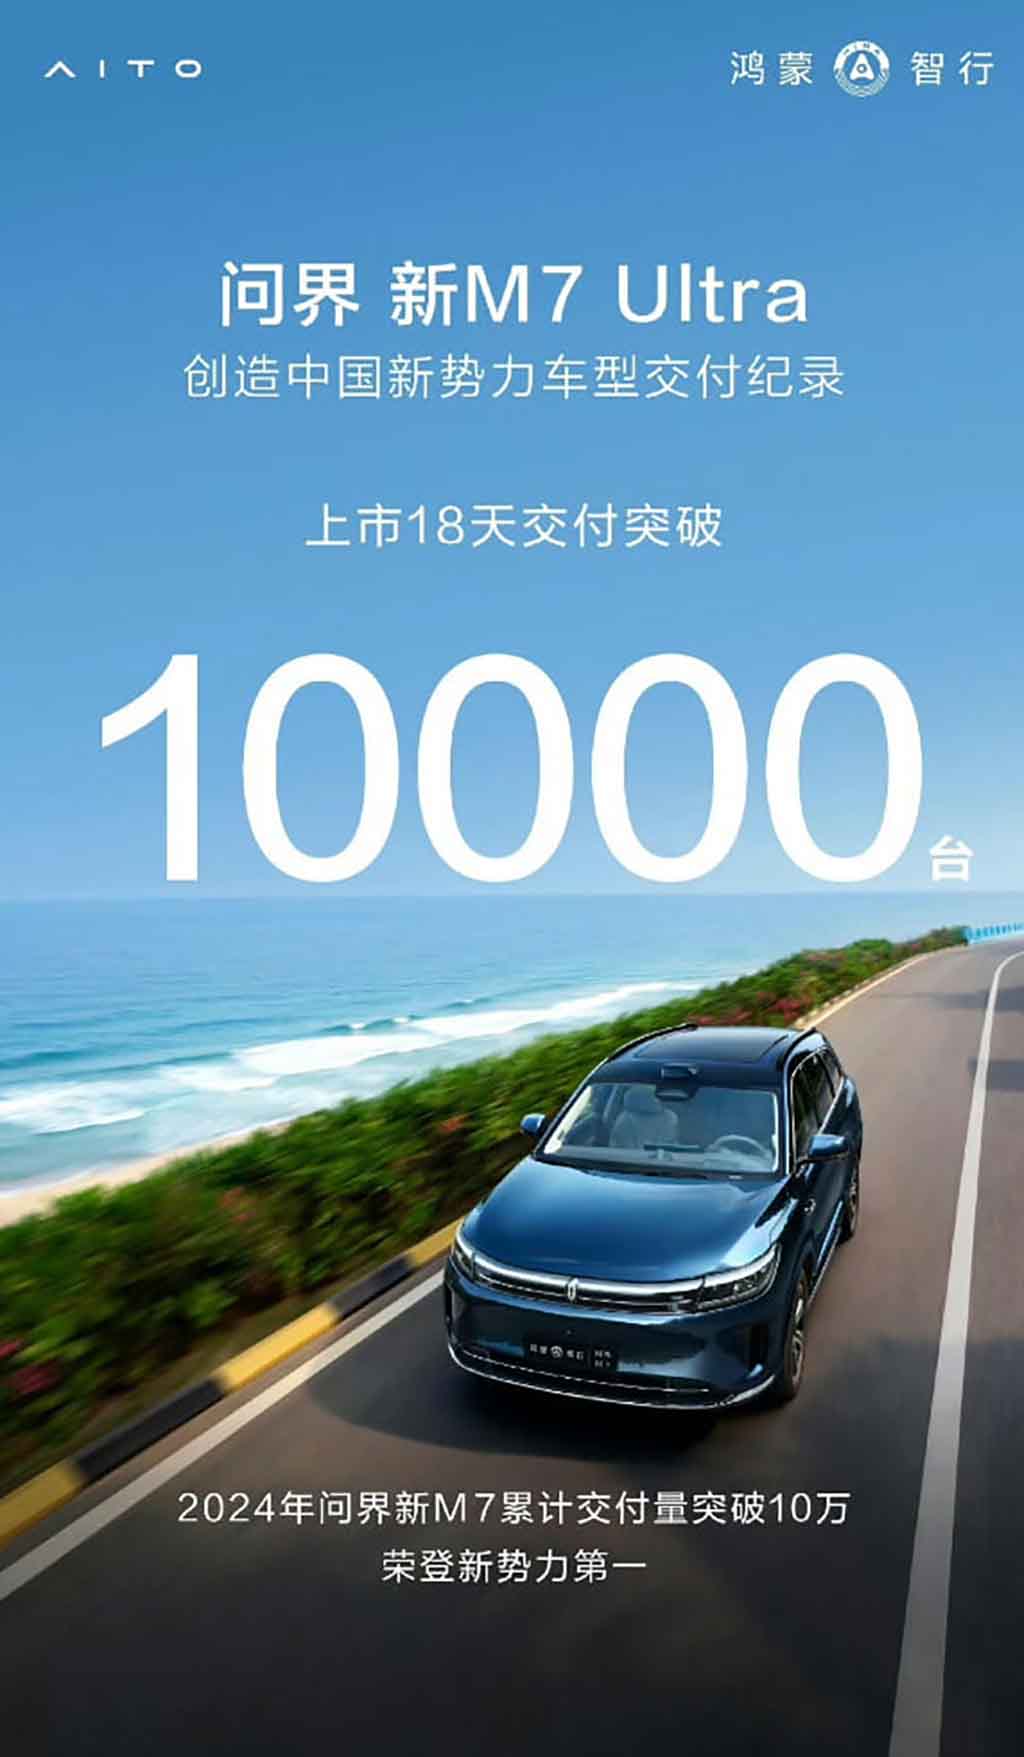 Huawei AITO M7 Ultra 10000 units